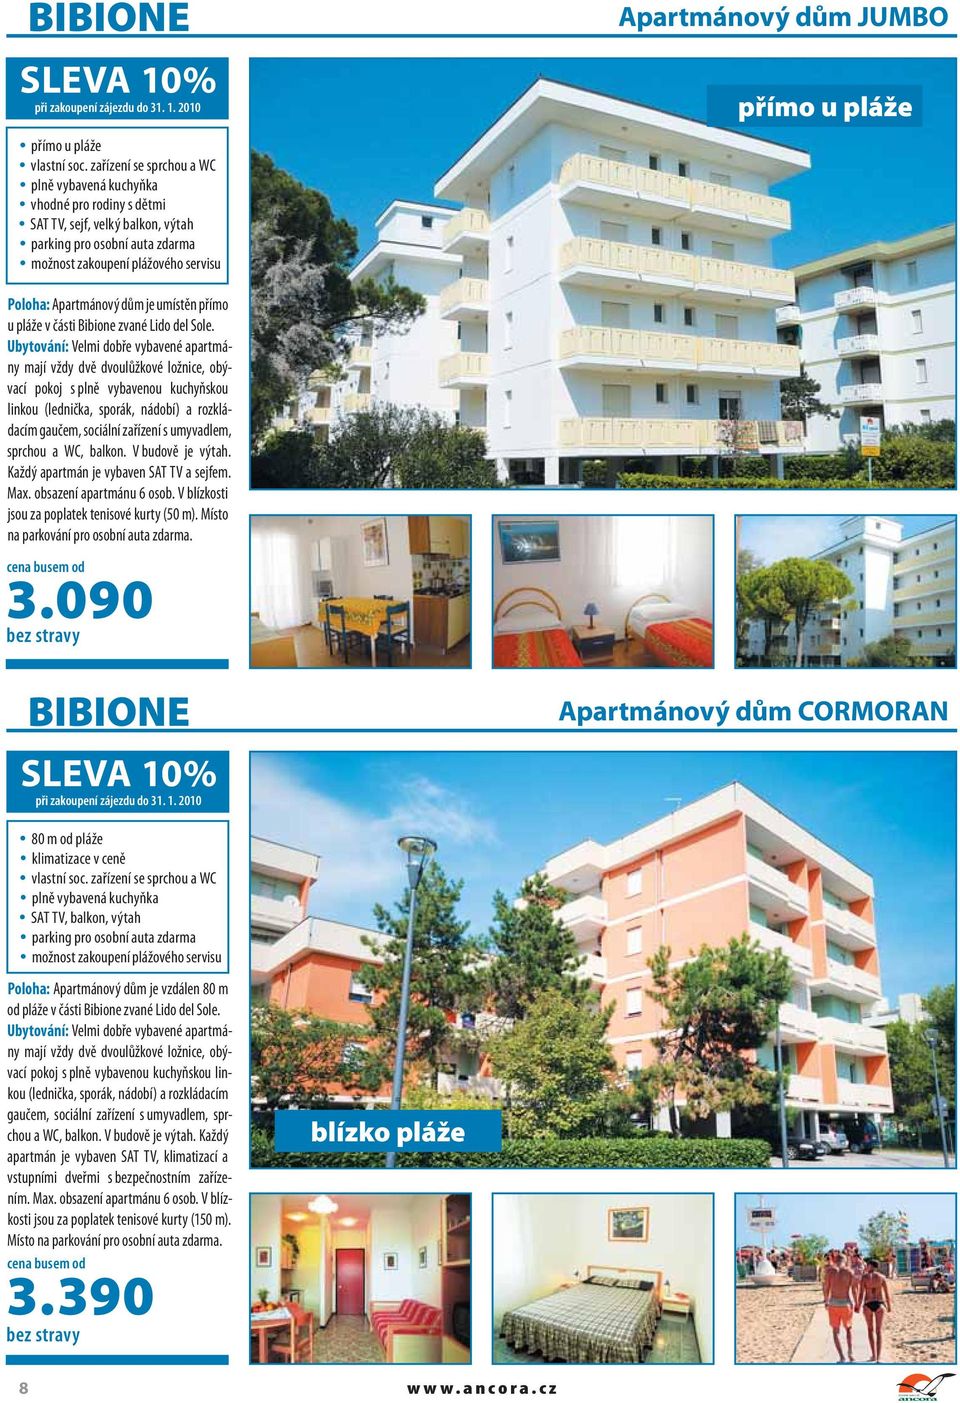 Apartmánový dům je umístěn přímo u pláže v části Bibione zvané Lido del Sole.